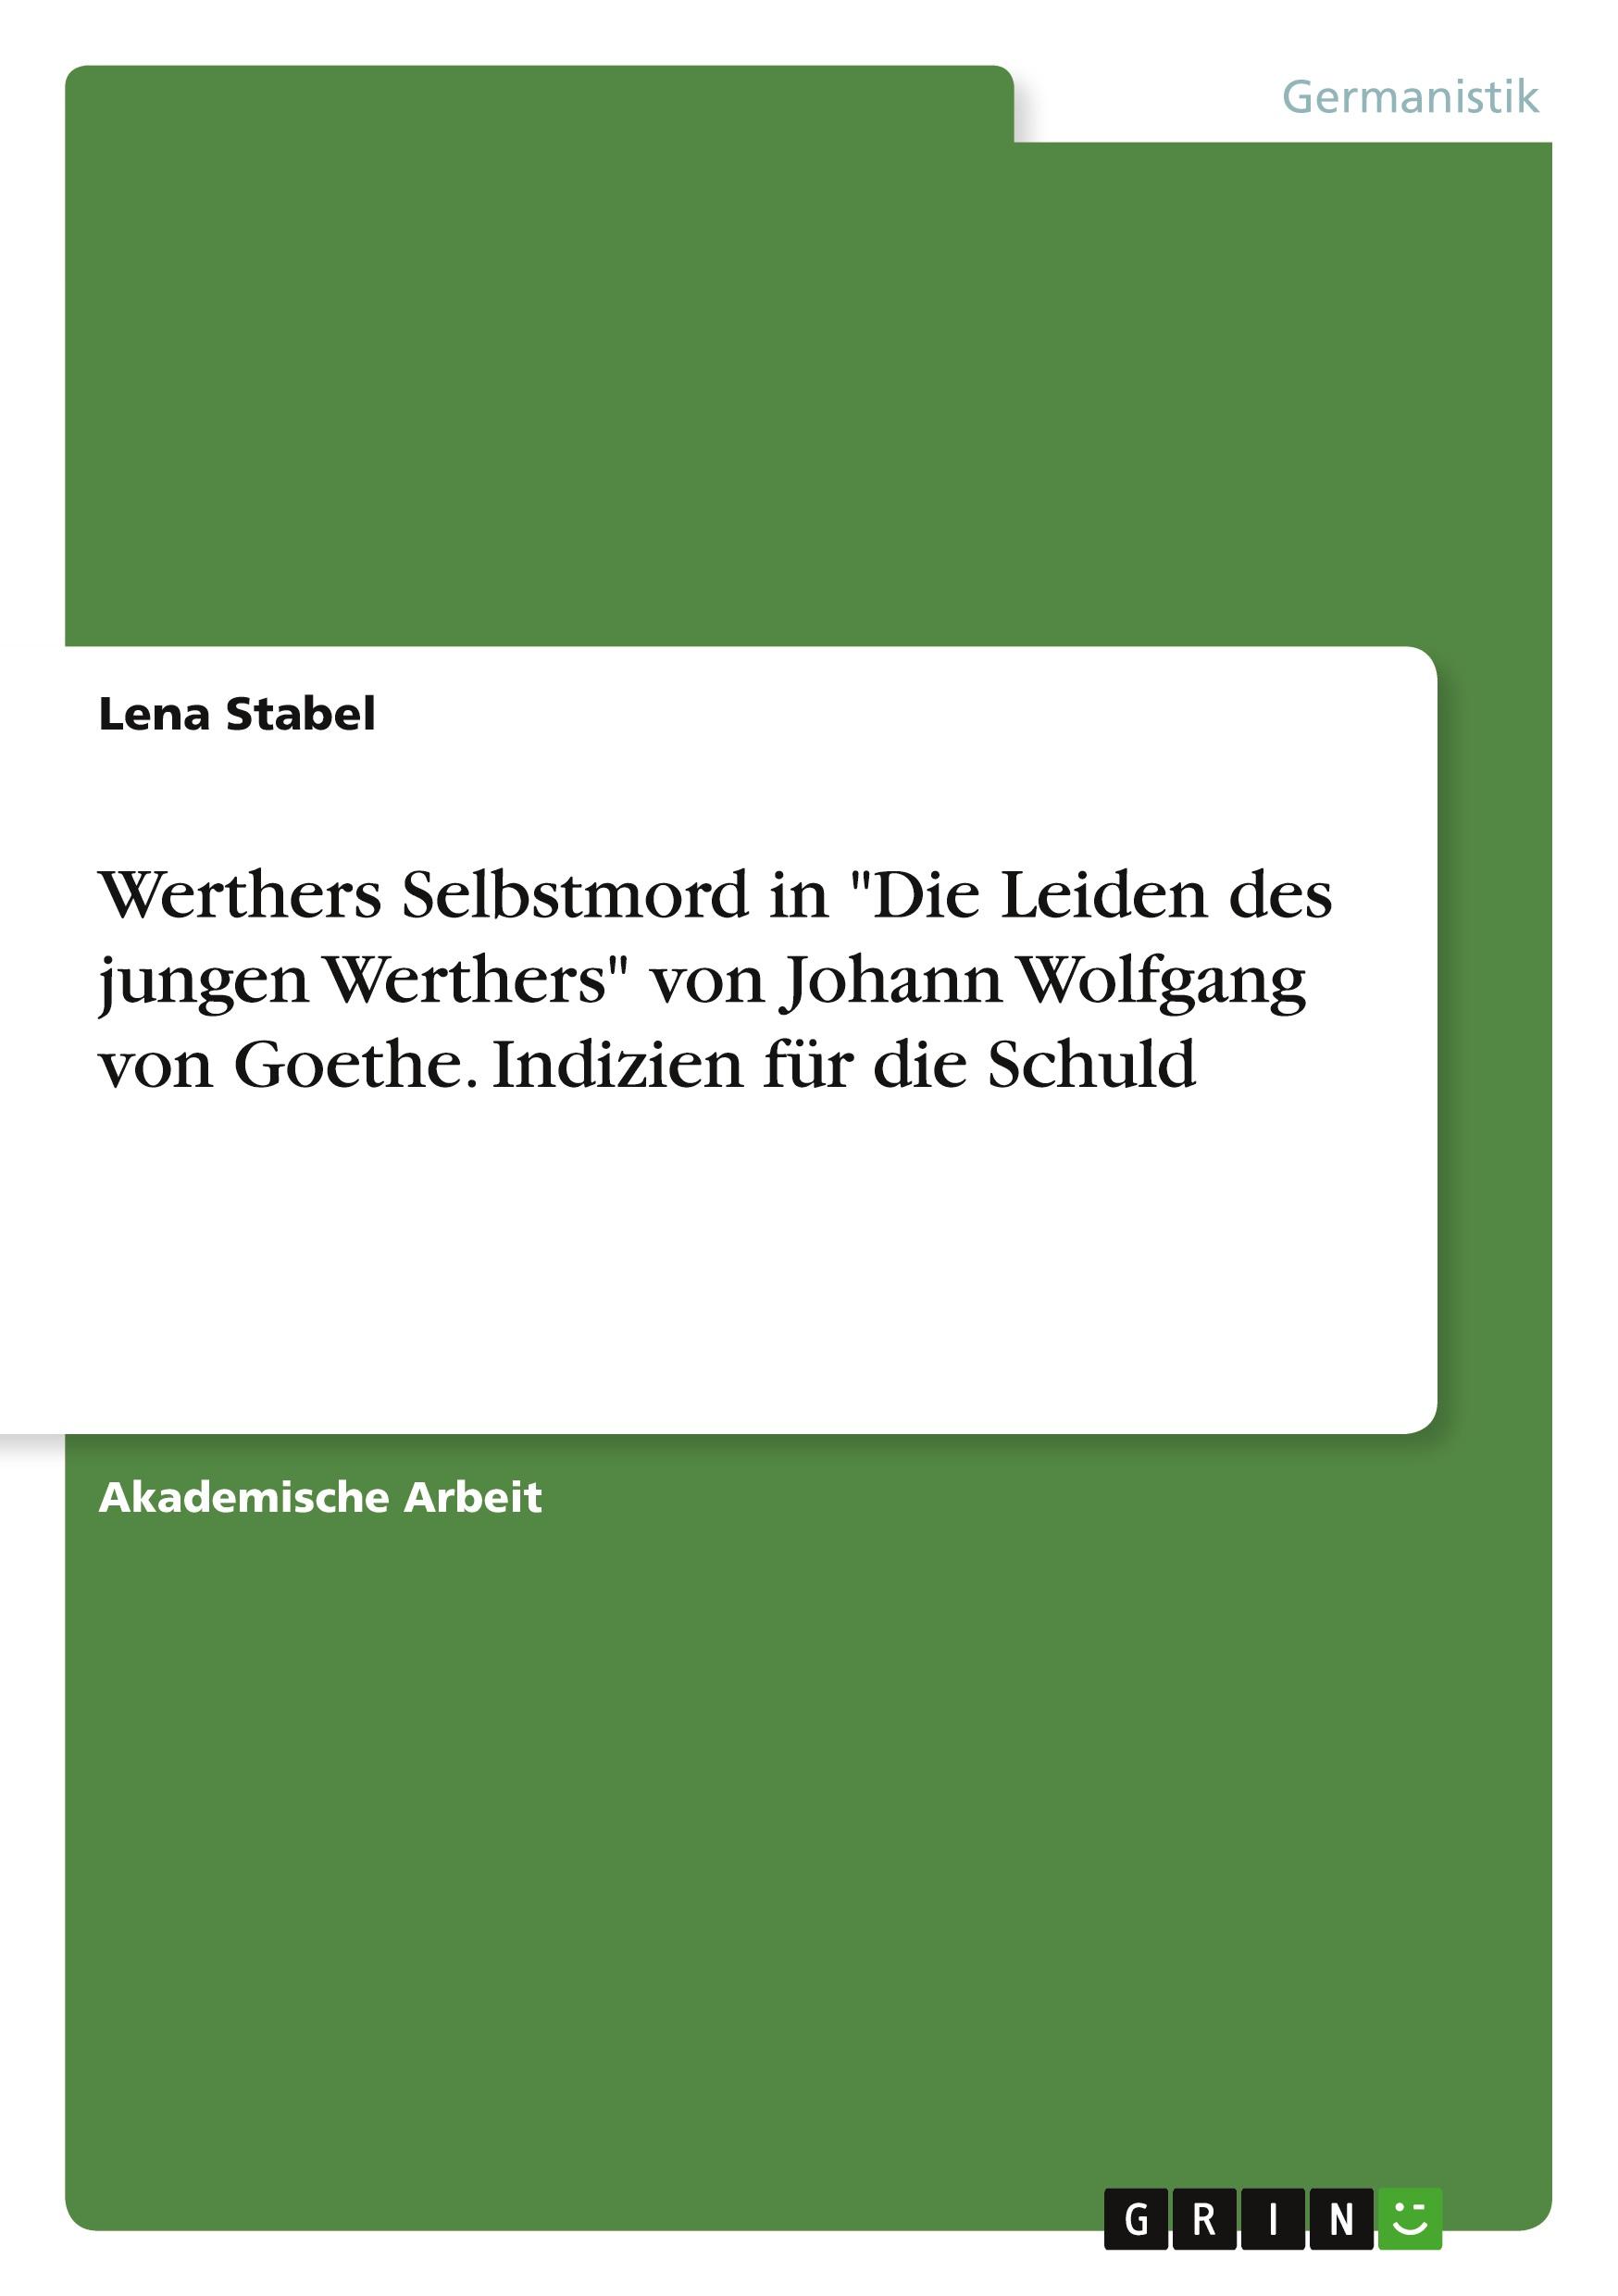 Werthers Selbstmord in "Die Leiden des jungen Werthers" von Johann Wolfgang von Goethe. Indizien für die Schuld